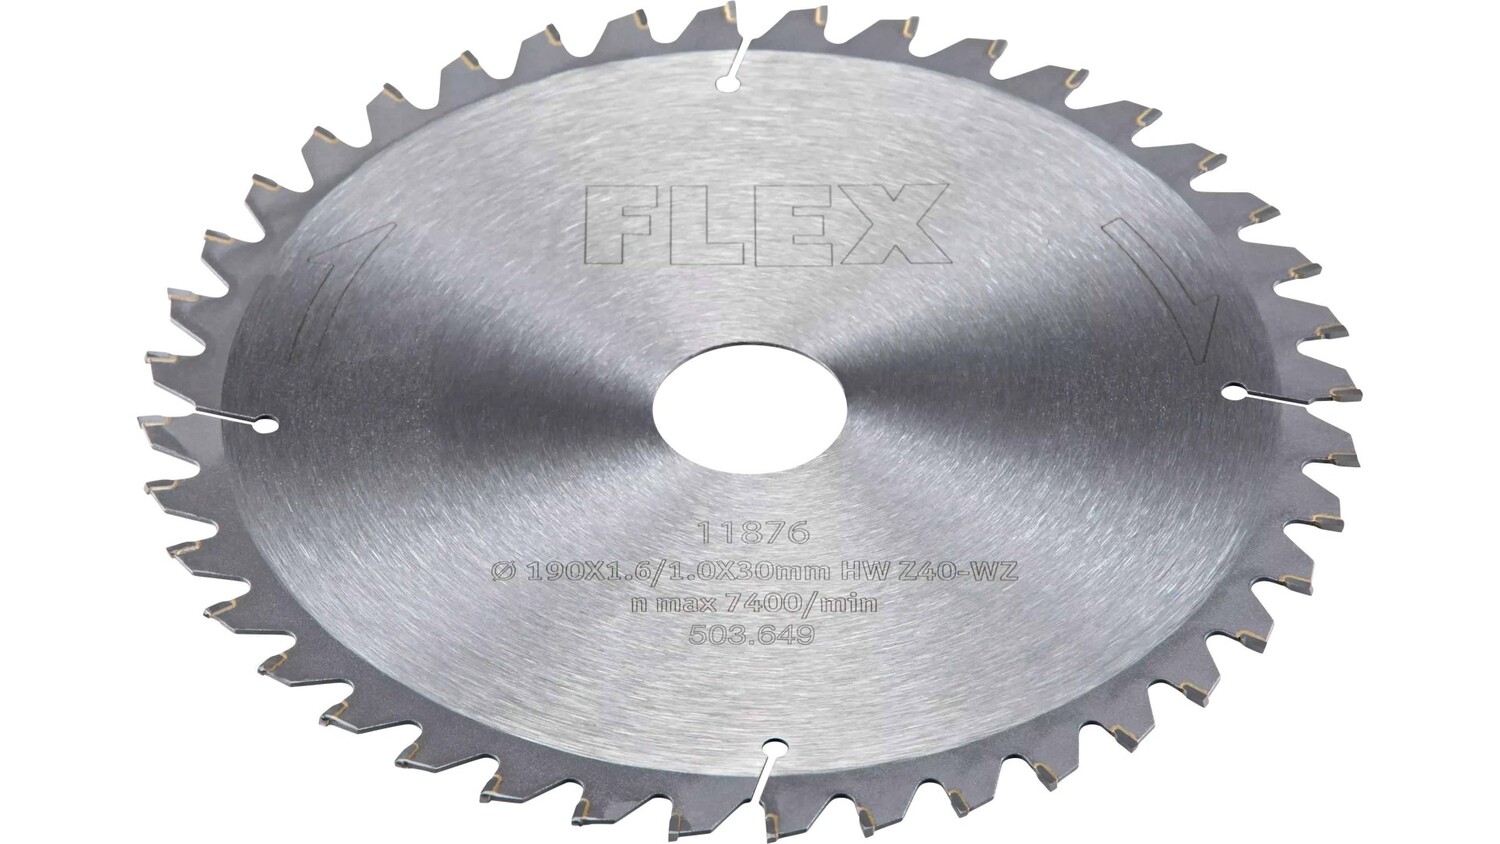 Пильный диск специальный Flex D190x1,6/1,0x30 HW Z40/15° WZ 503649 пильный диск специальный flex d190x1 6 1 0x30 hw z40 15° wz 503649